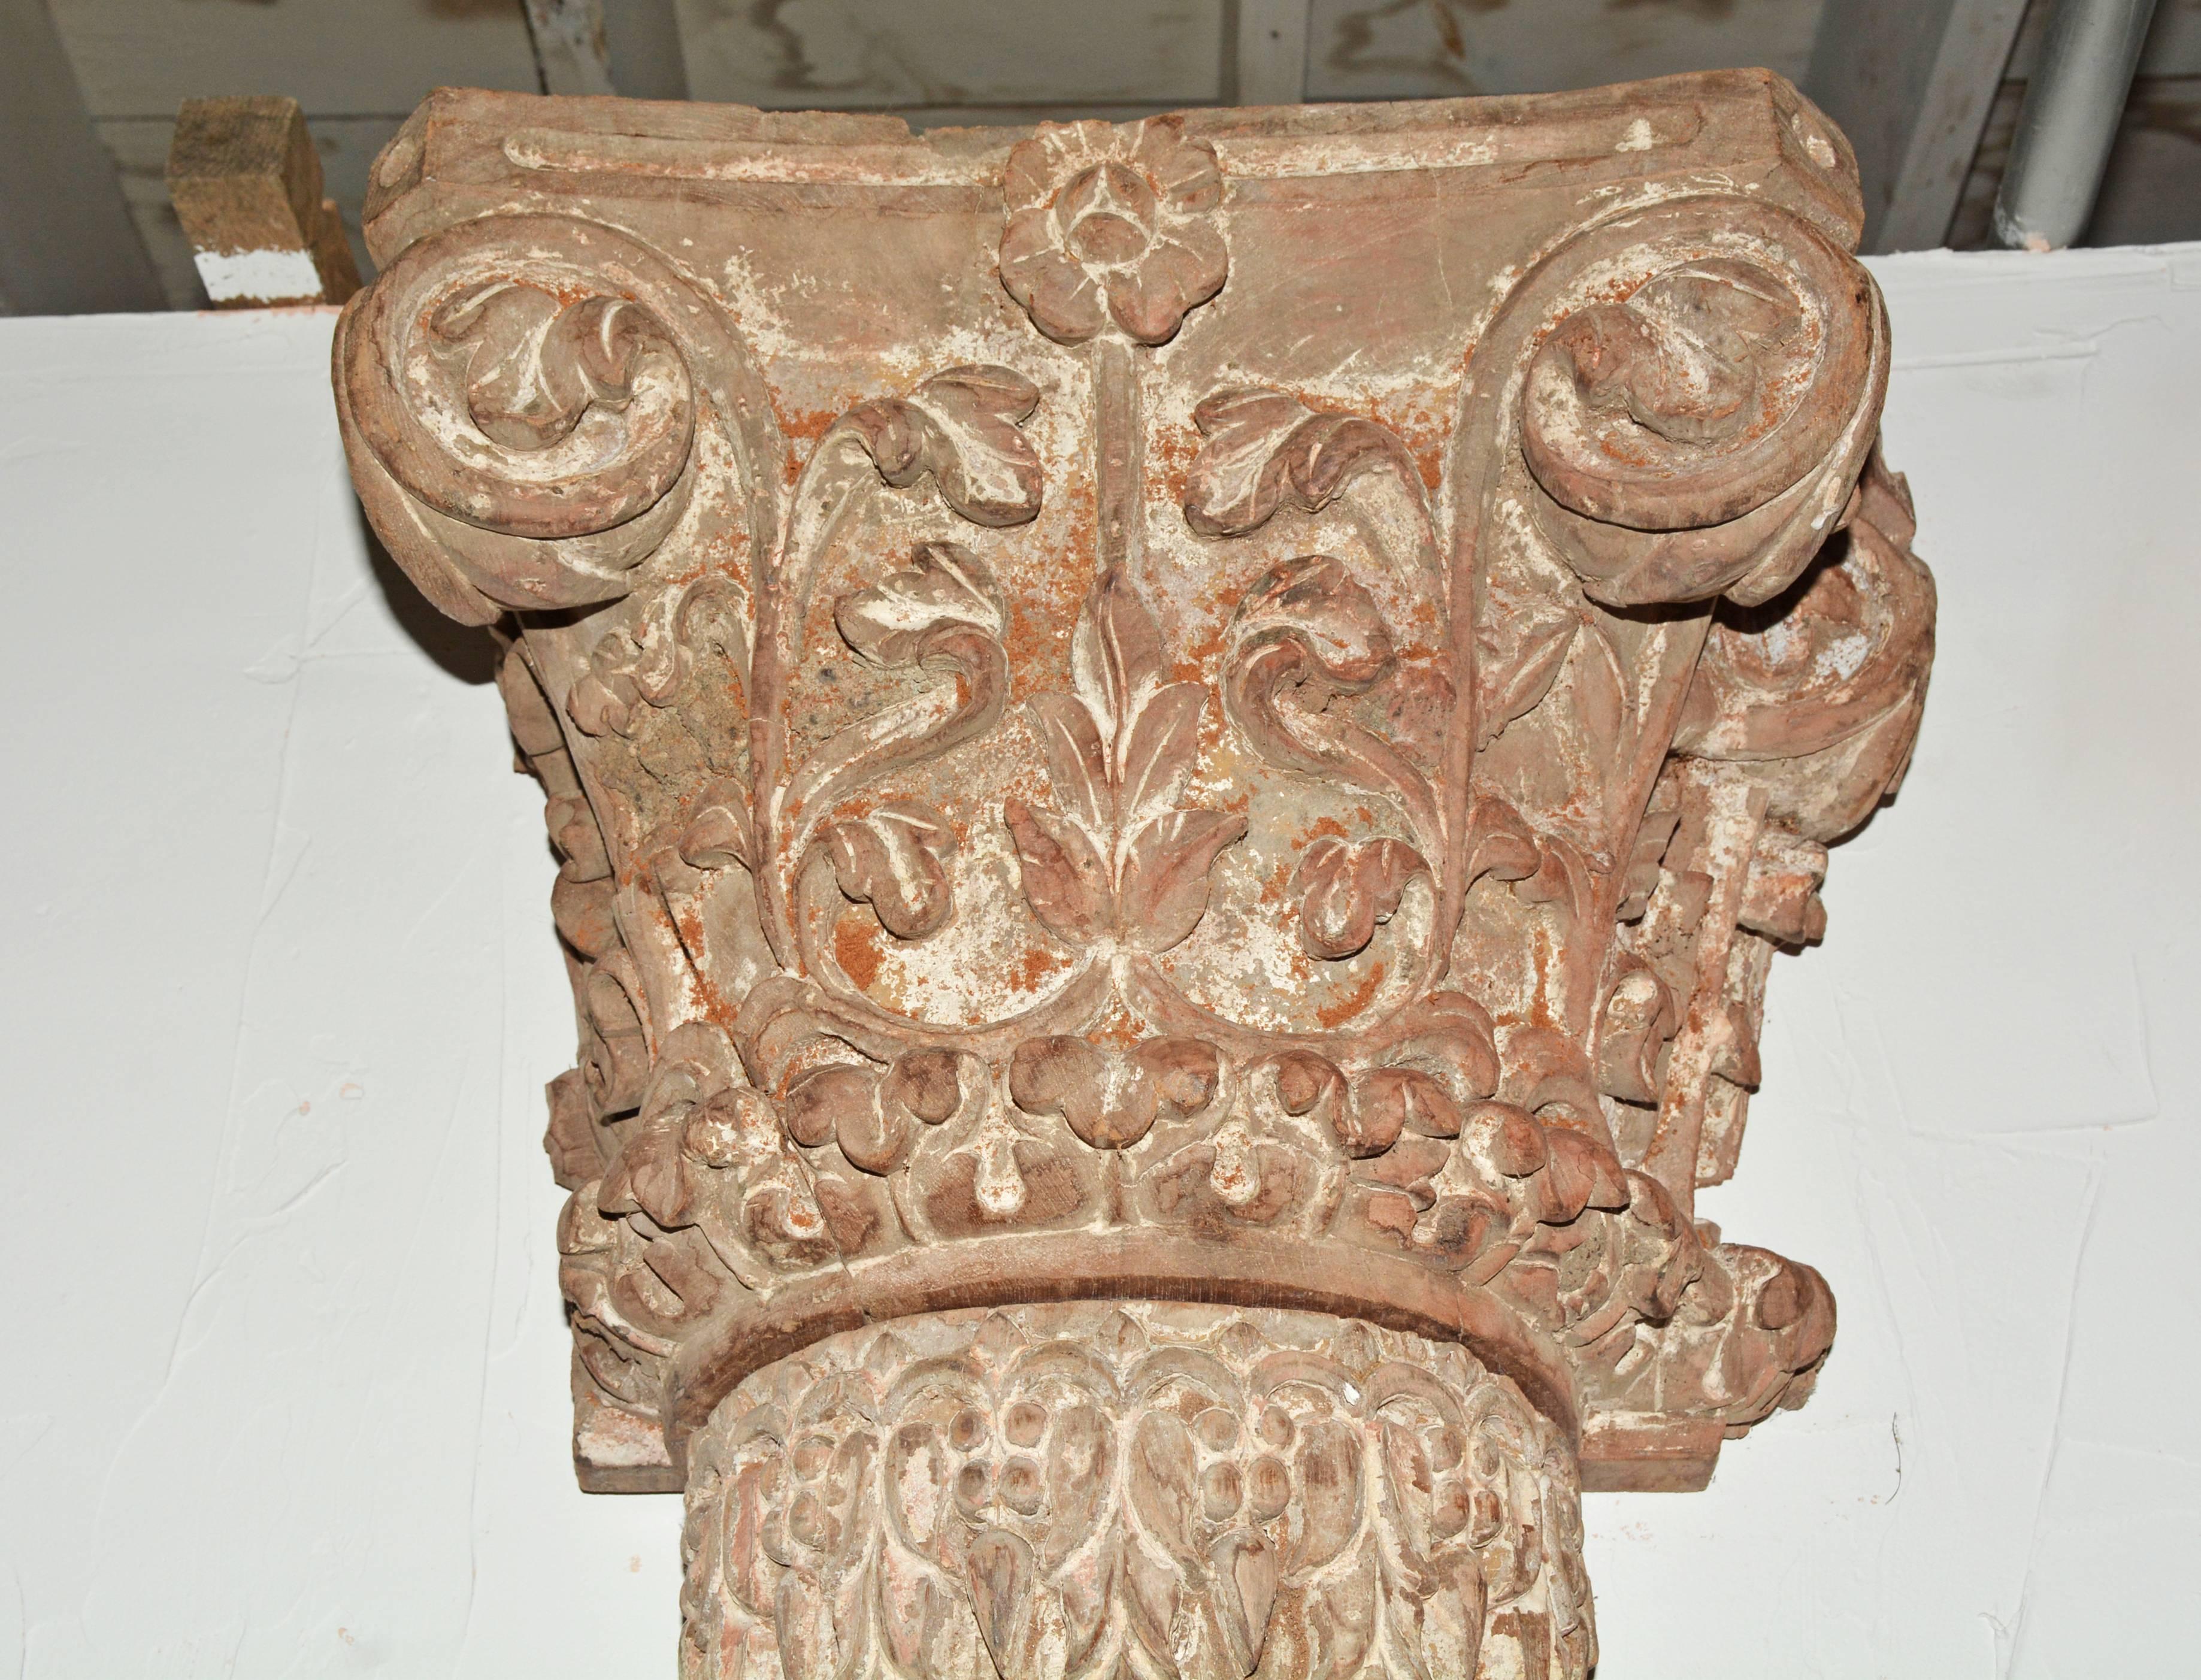 La paire de pilastres antiques a des fûts cannelés semi-circulaires, des bases décoratives et des dos plats, tous sculptés à la main. Les chapiteaux corinthiens assortis, à dos plat, sont également sculptés à la main avec des feuilles et des vignes.